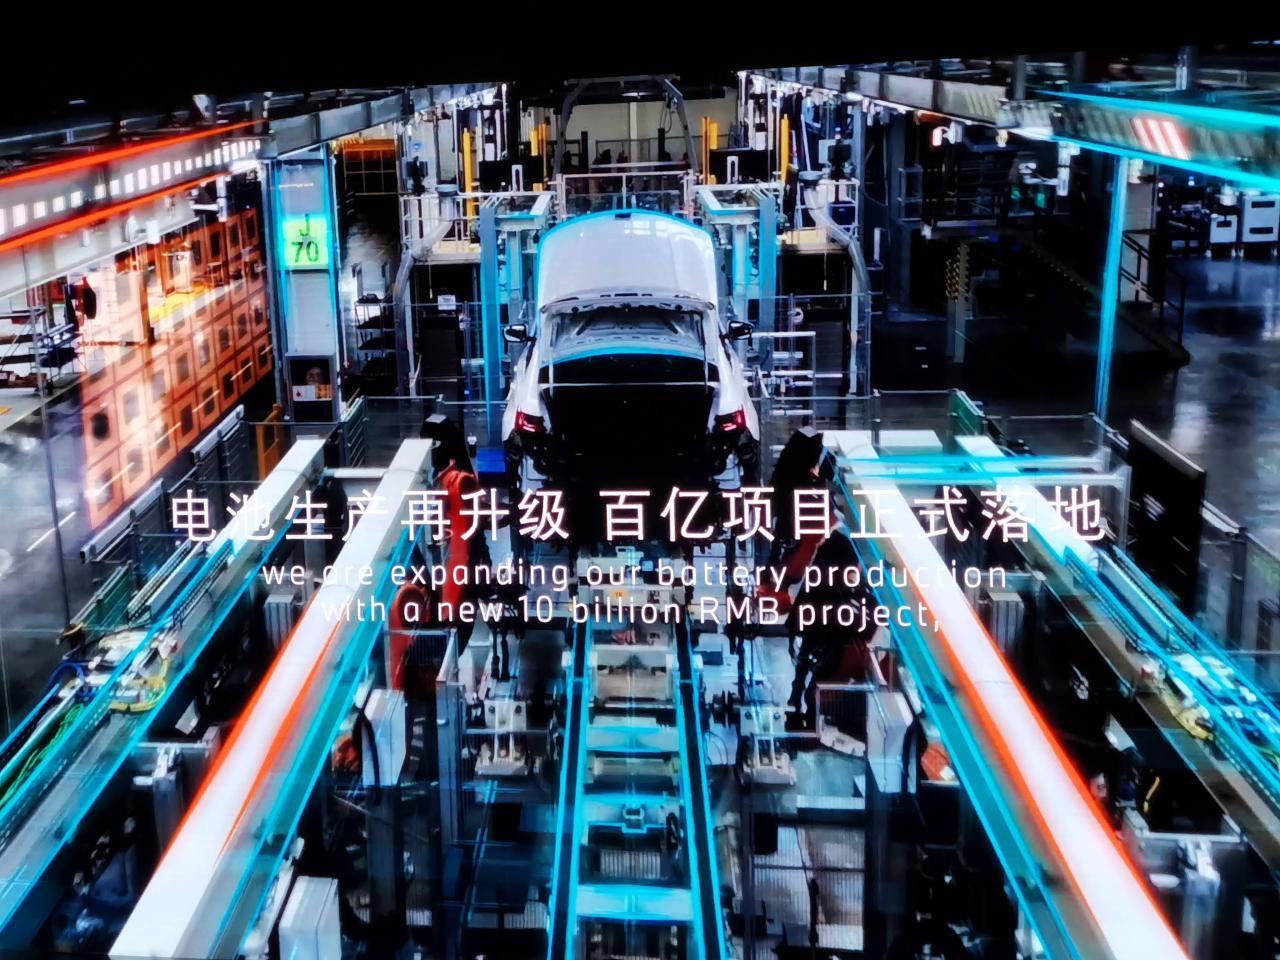 投资百亿元 宝马第六代动力电池将在沈阳生产